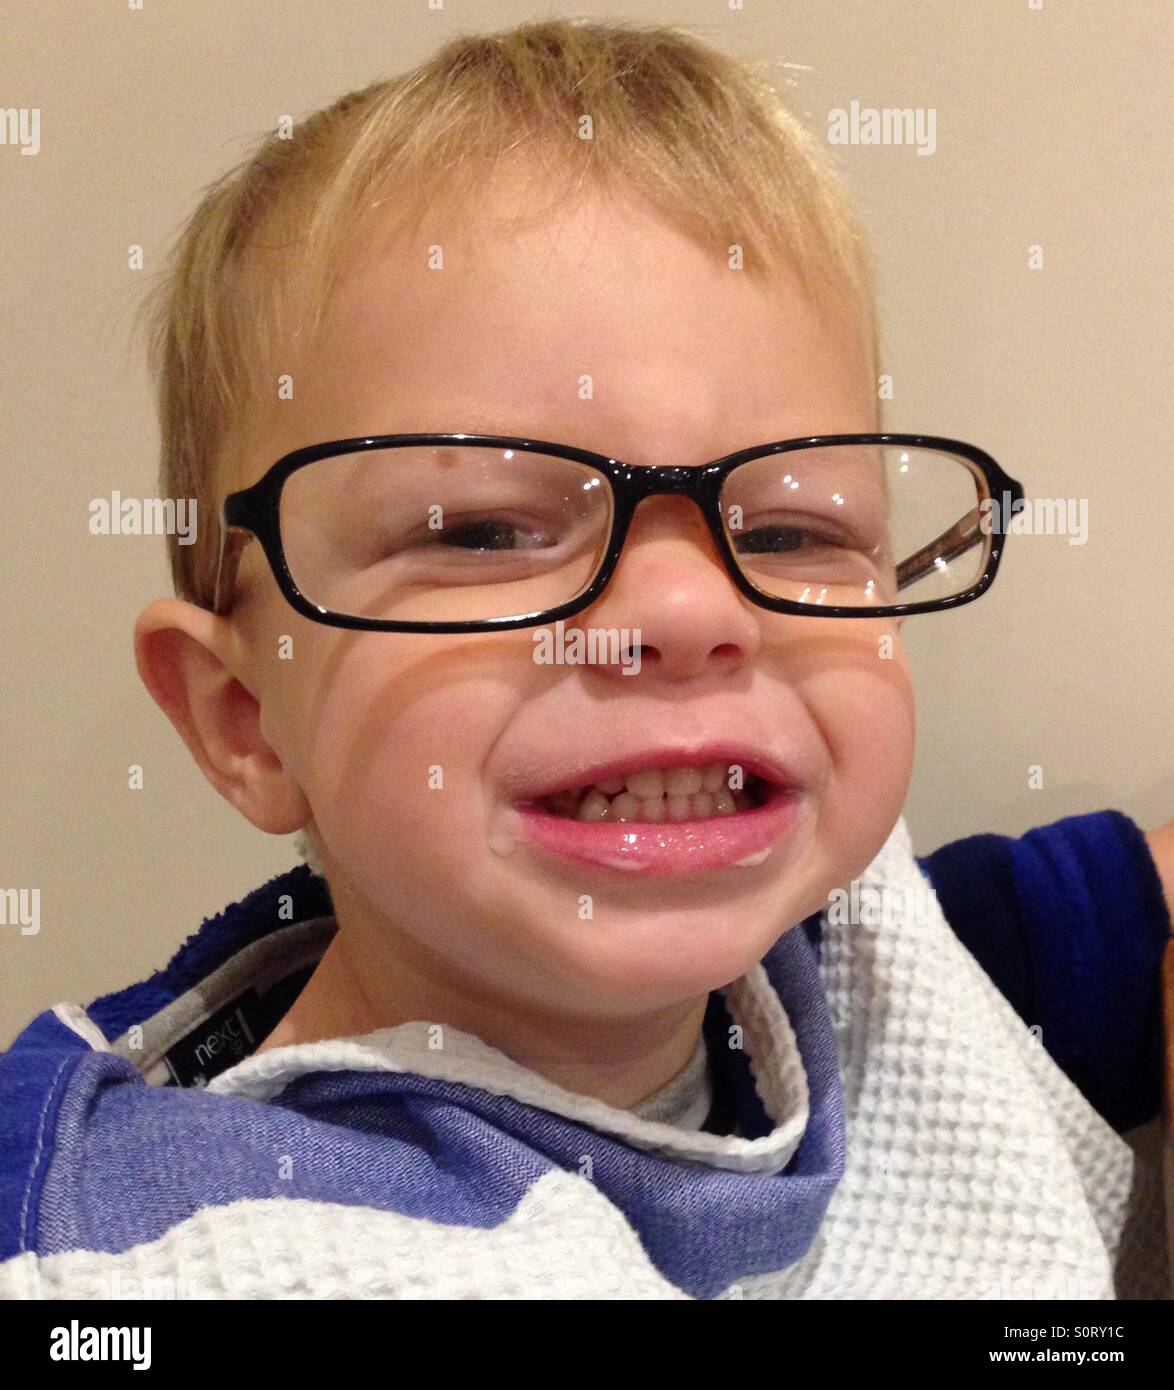 Cute nerdy Kleinkind mit Brille Stockfotografie - Alamy